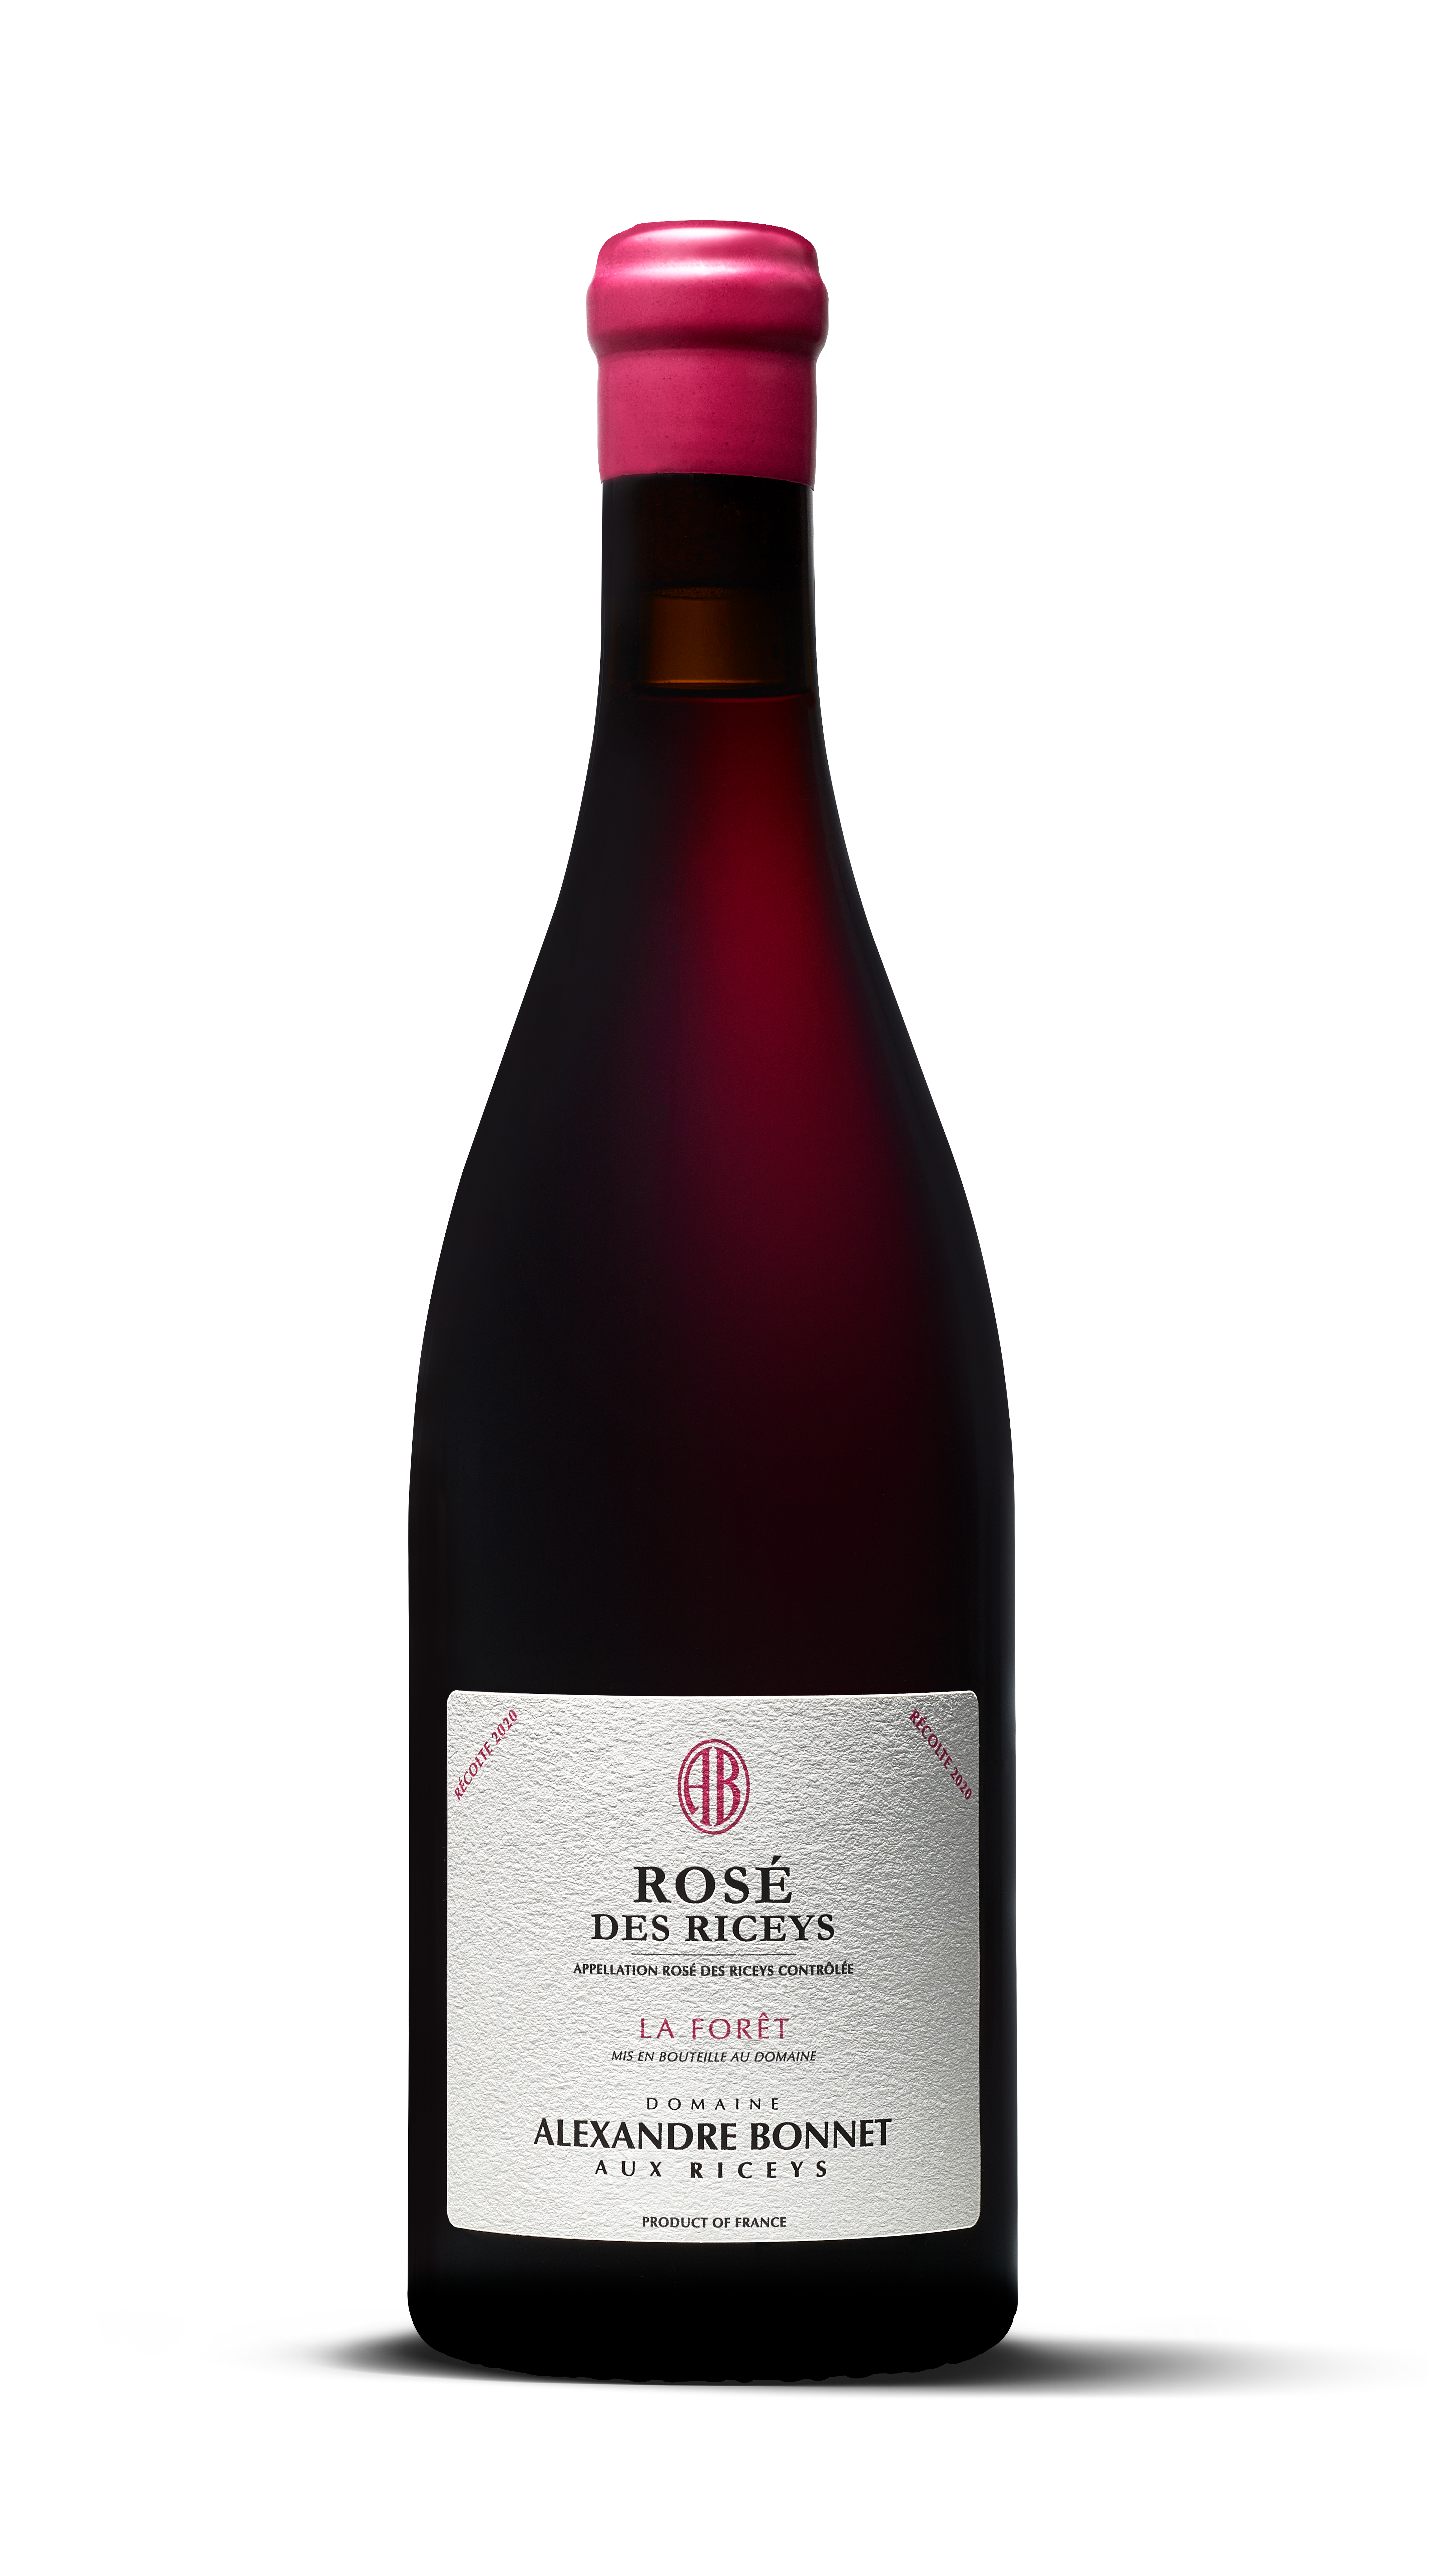 Alexandre Bonnet: Célébration Rosé Riceys, Entre Terroir Unique Excellence Vinicole